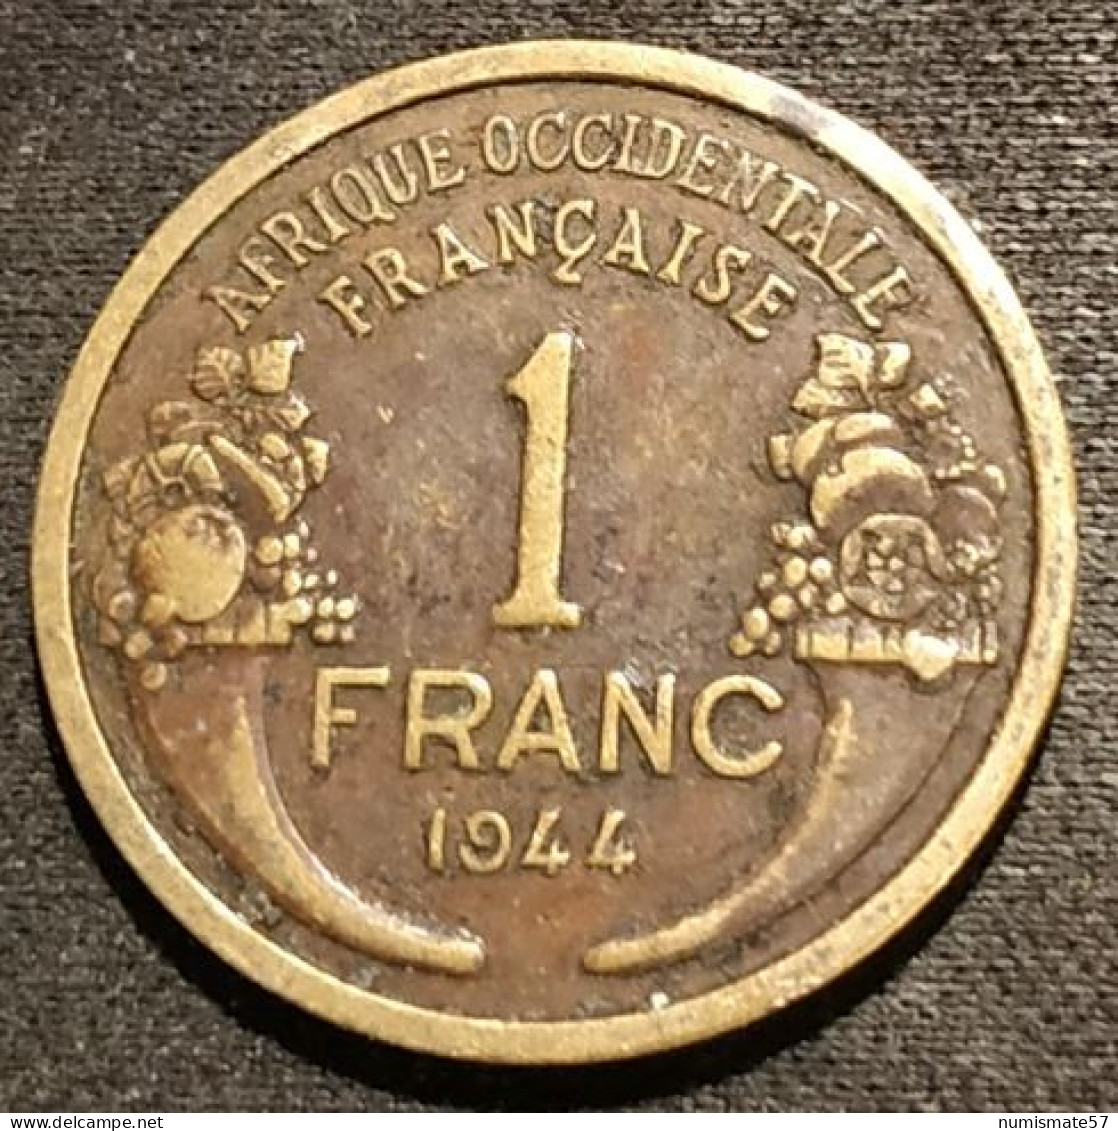 AFRIQUE OCCIDENTALE FRANÇAISE - 1 FRANC 1944 - Morlon - KM 2 - Afrique Occidentale Française